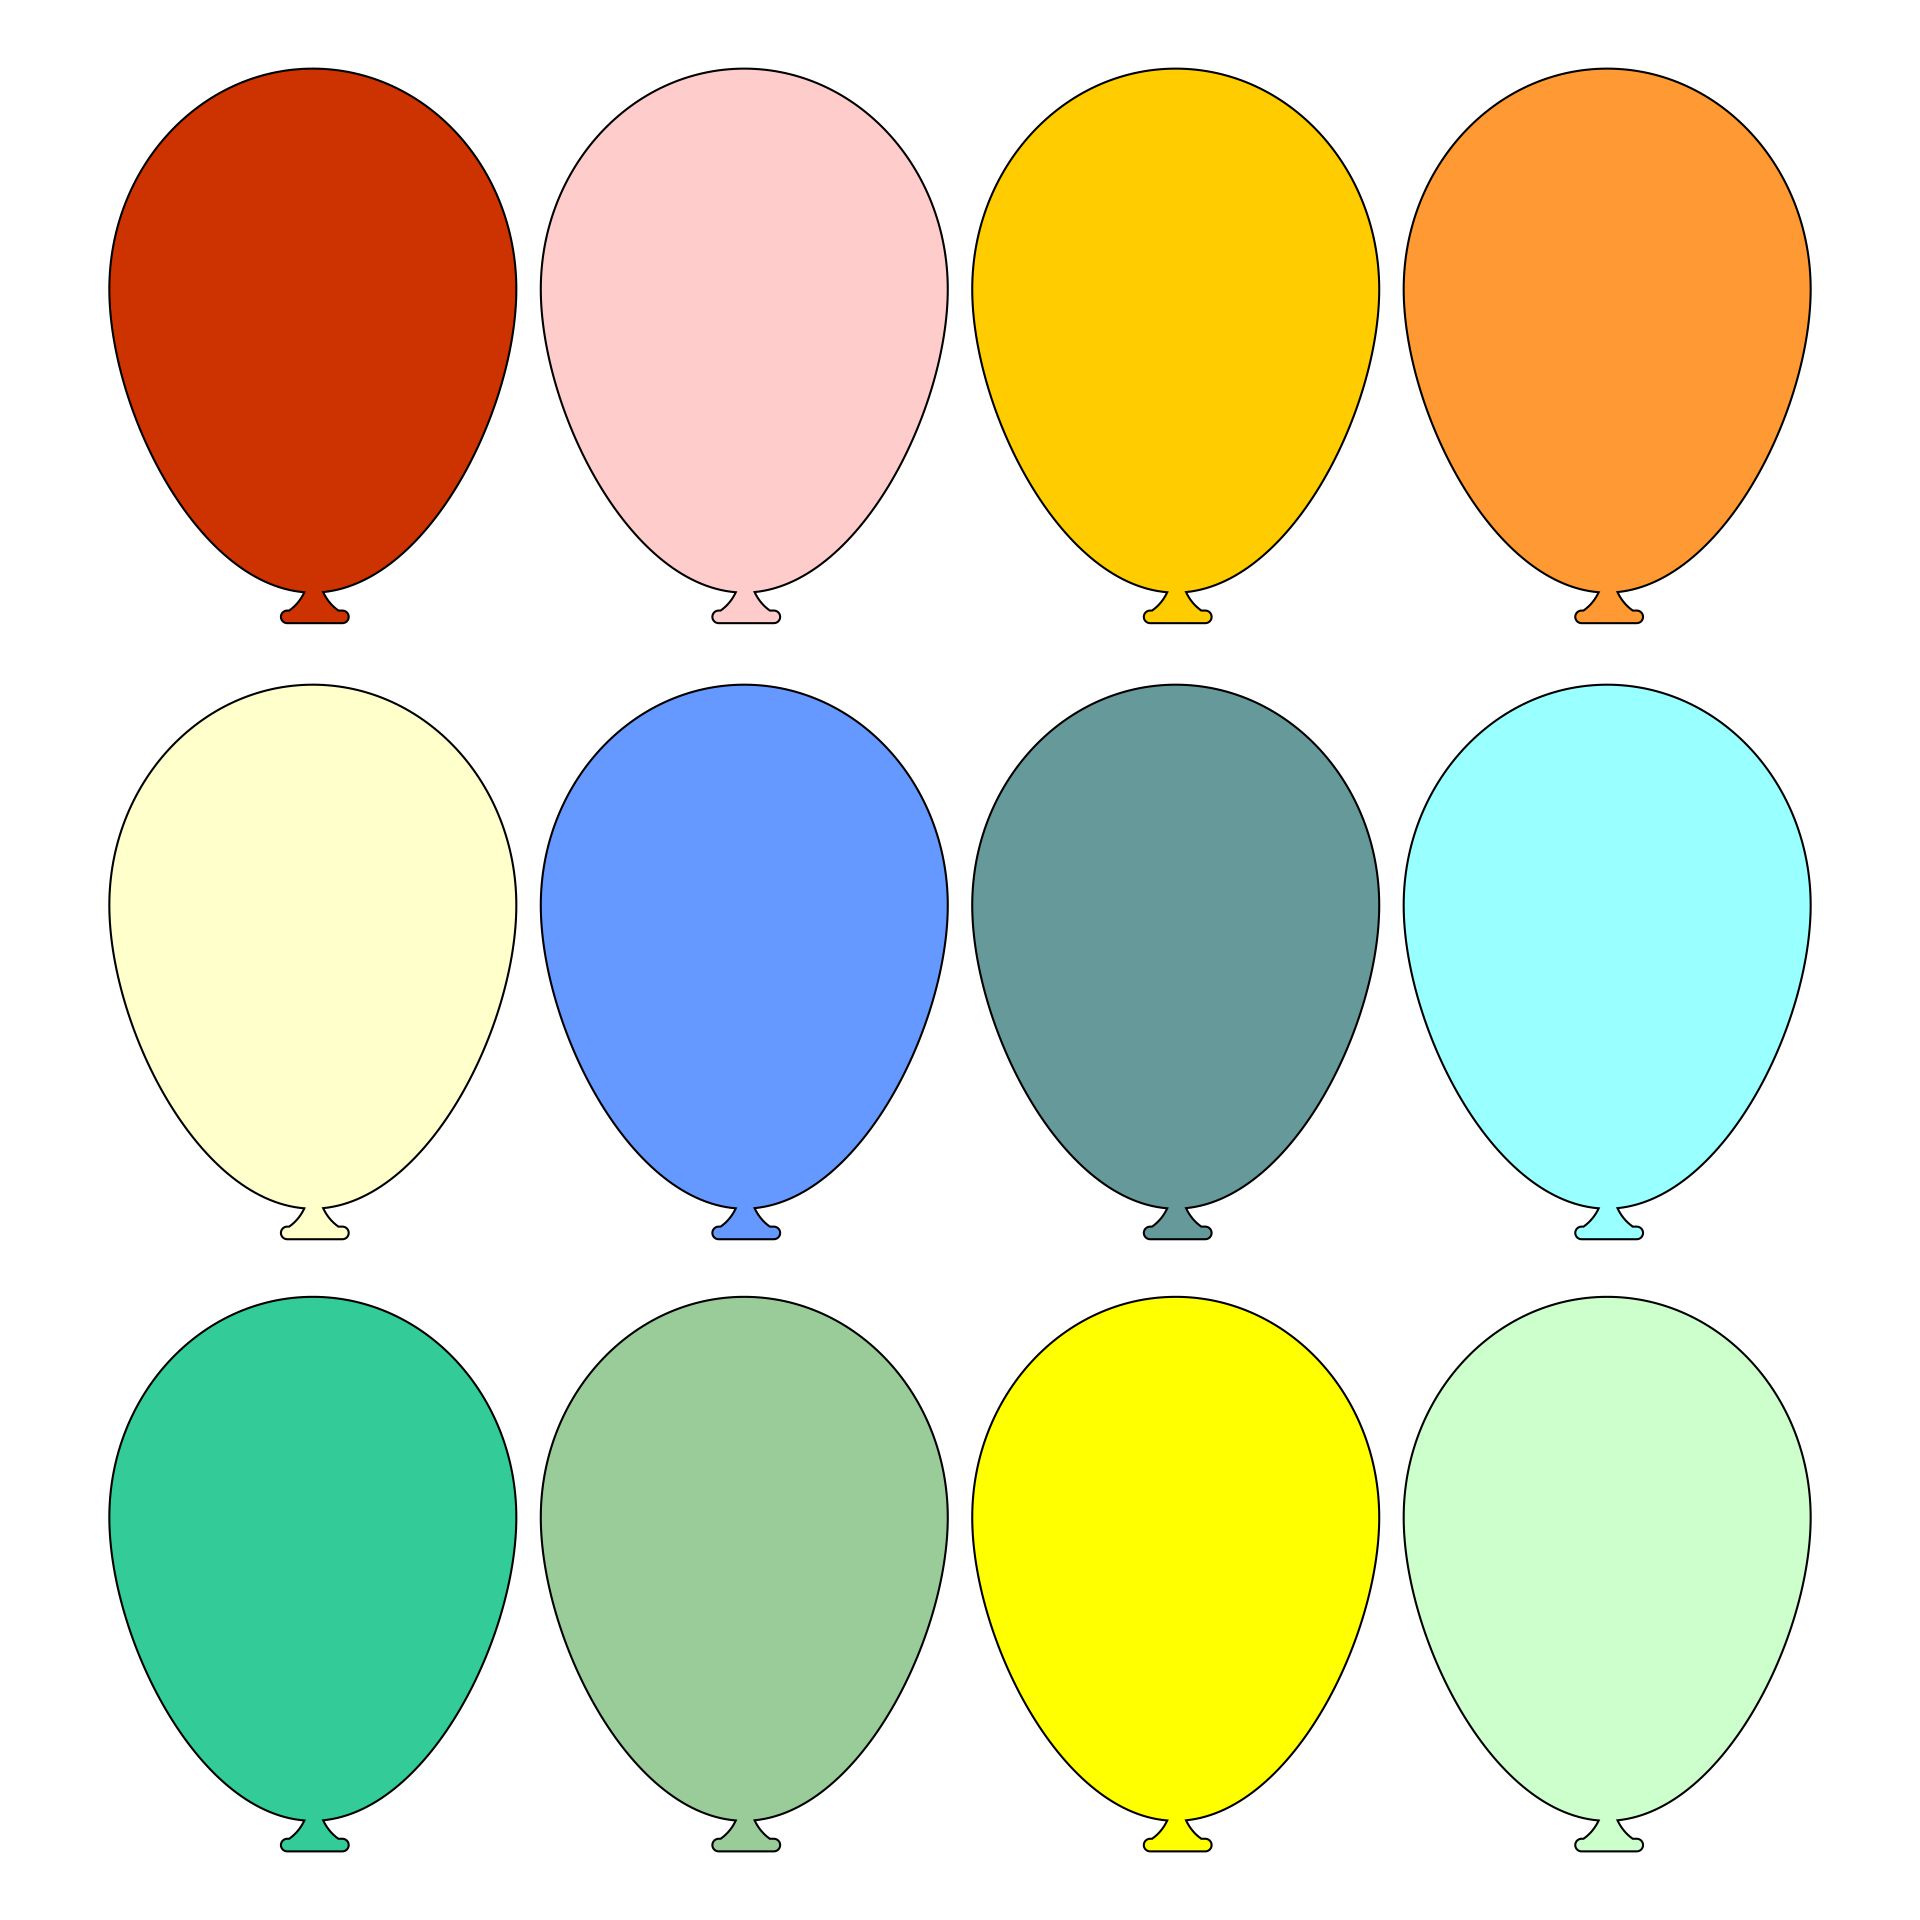 balloon-template-free-printable-printable-world-holiday